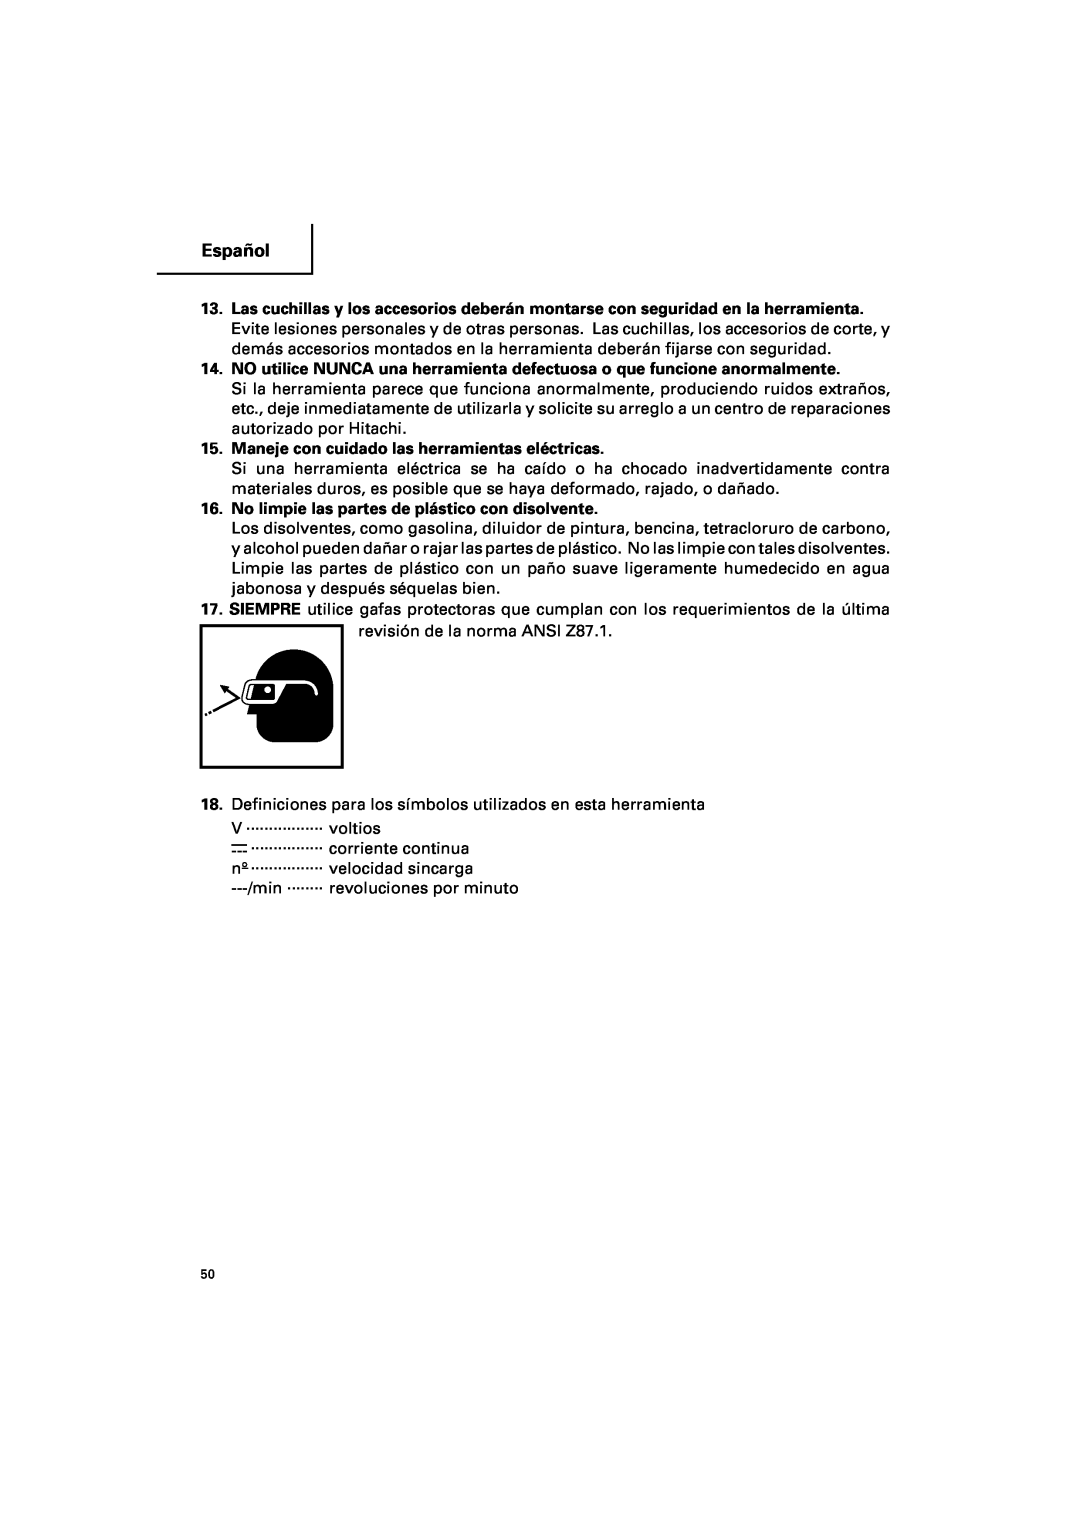 Hitachi DV 18DV, DV 14DV instruction manual Español, Maneje con cuidado las herramientas eléctricas 